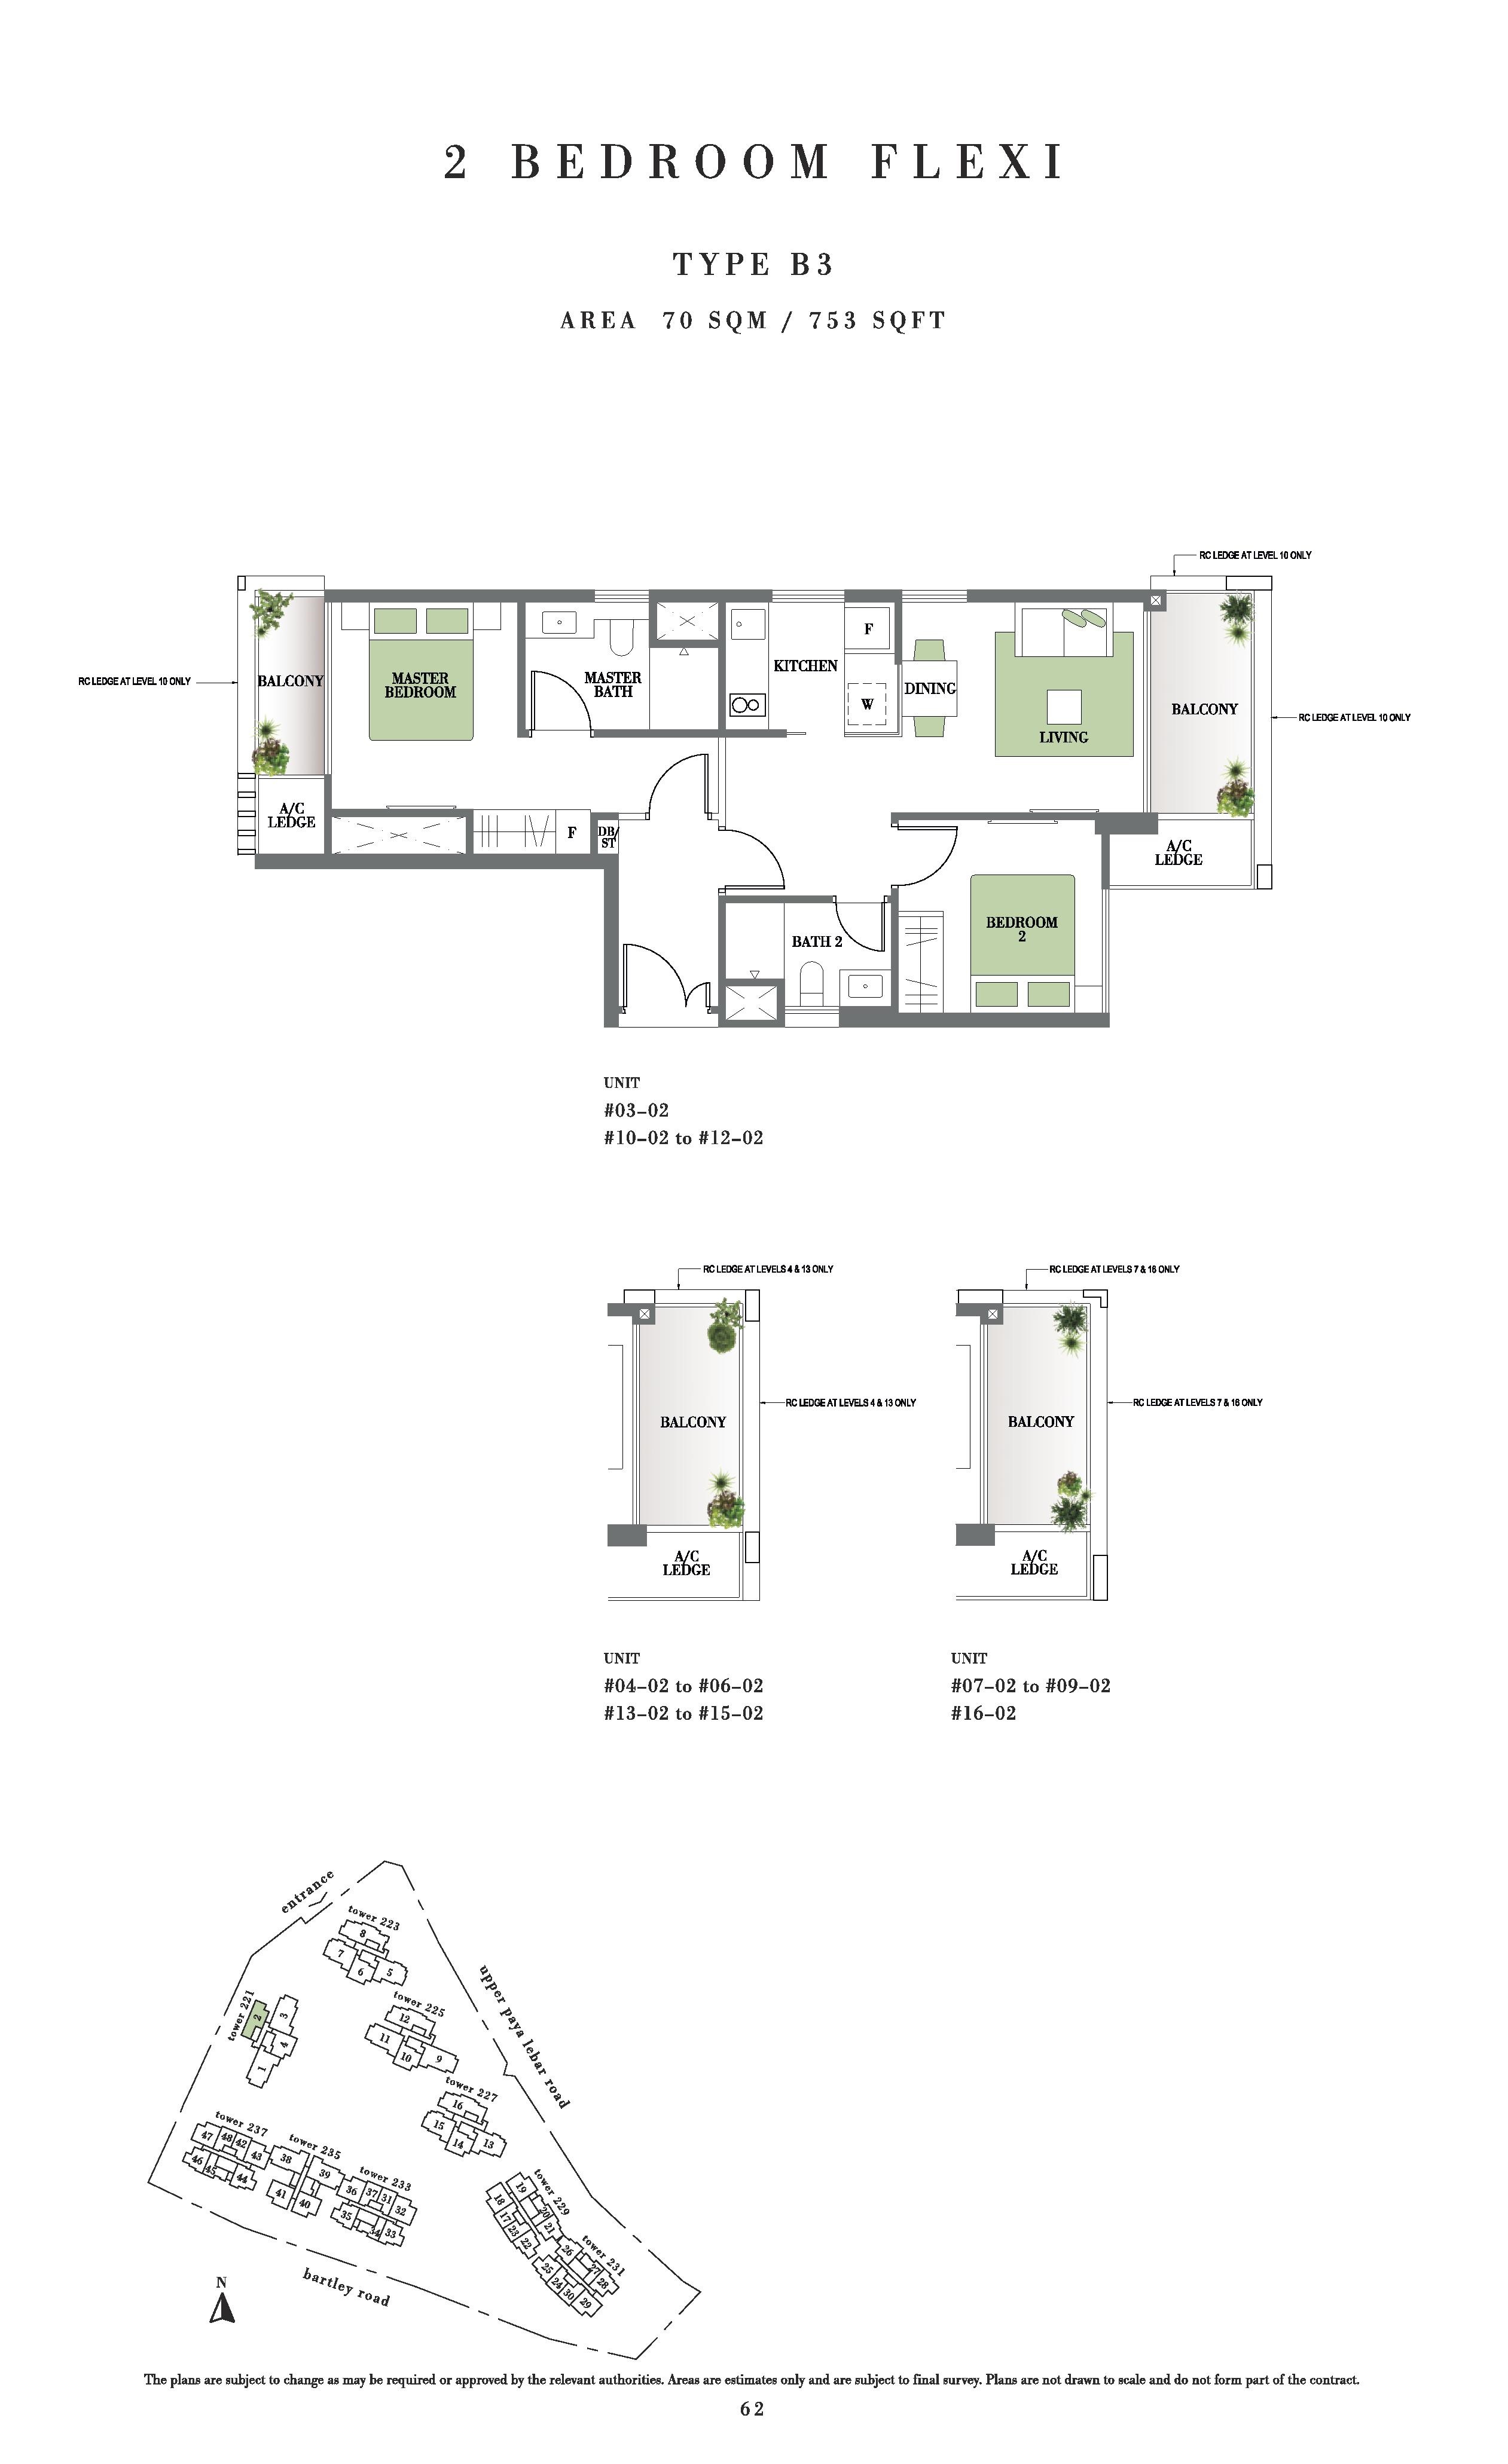 Botanique @ Bartley 2 Bedroom Flexi Floor Plans Type B3